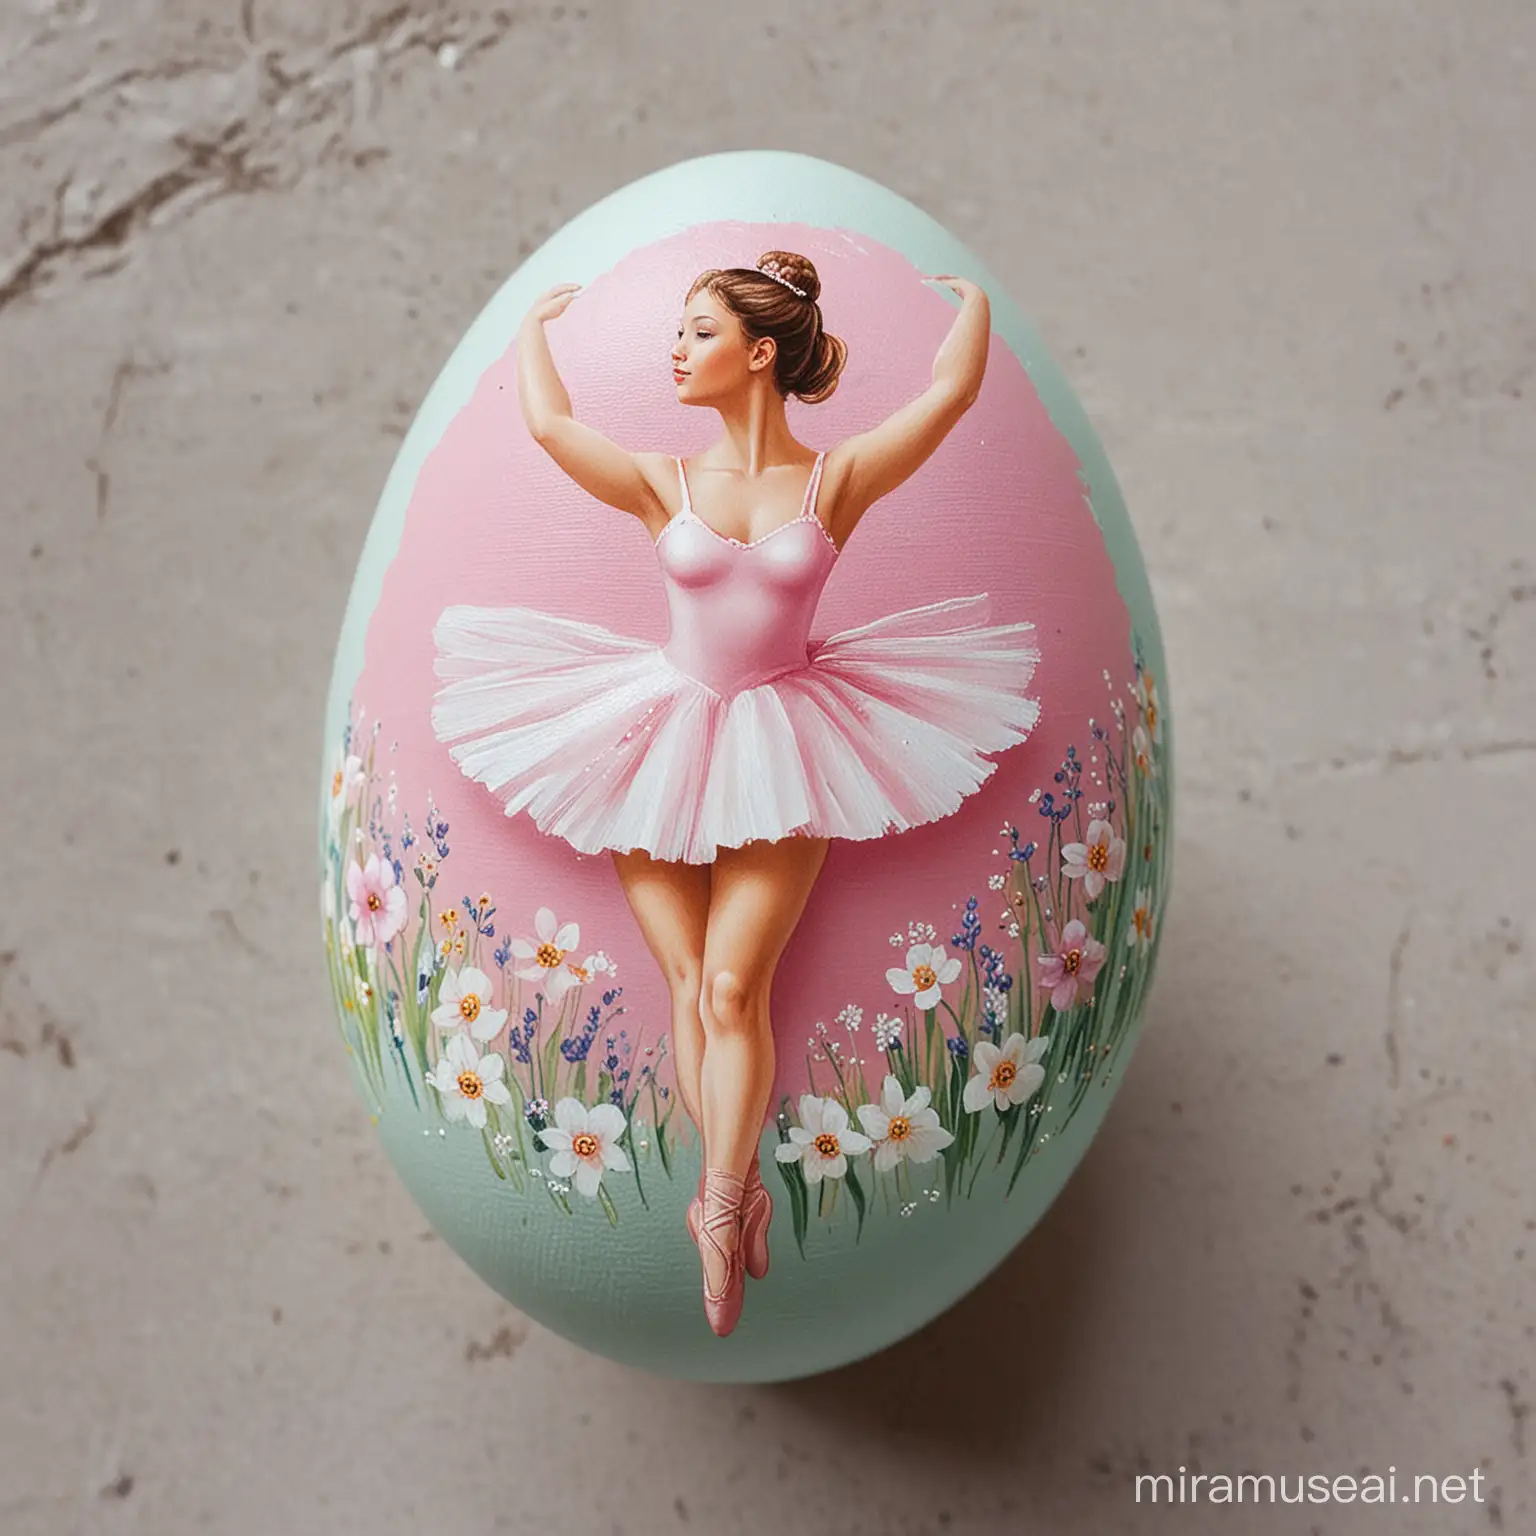 Graceful Ballerina Painted on Vibrant Easter Egg